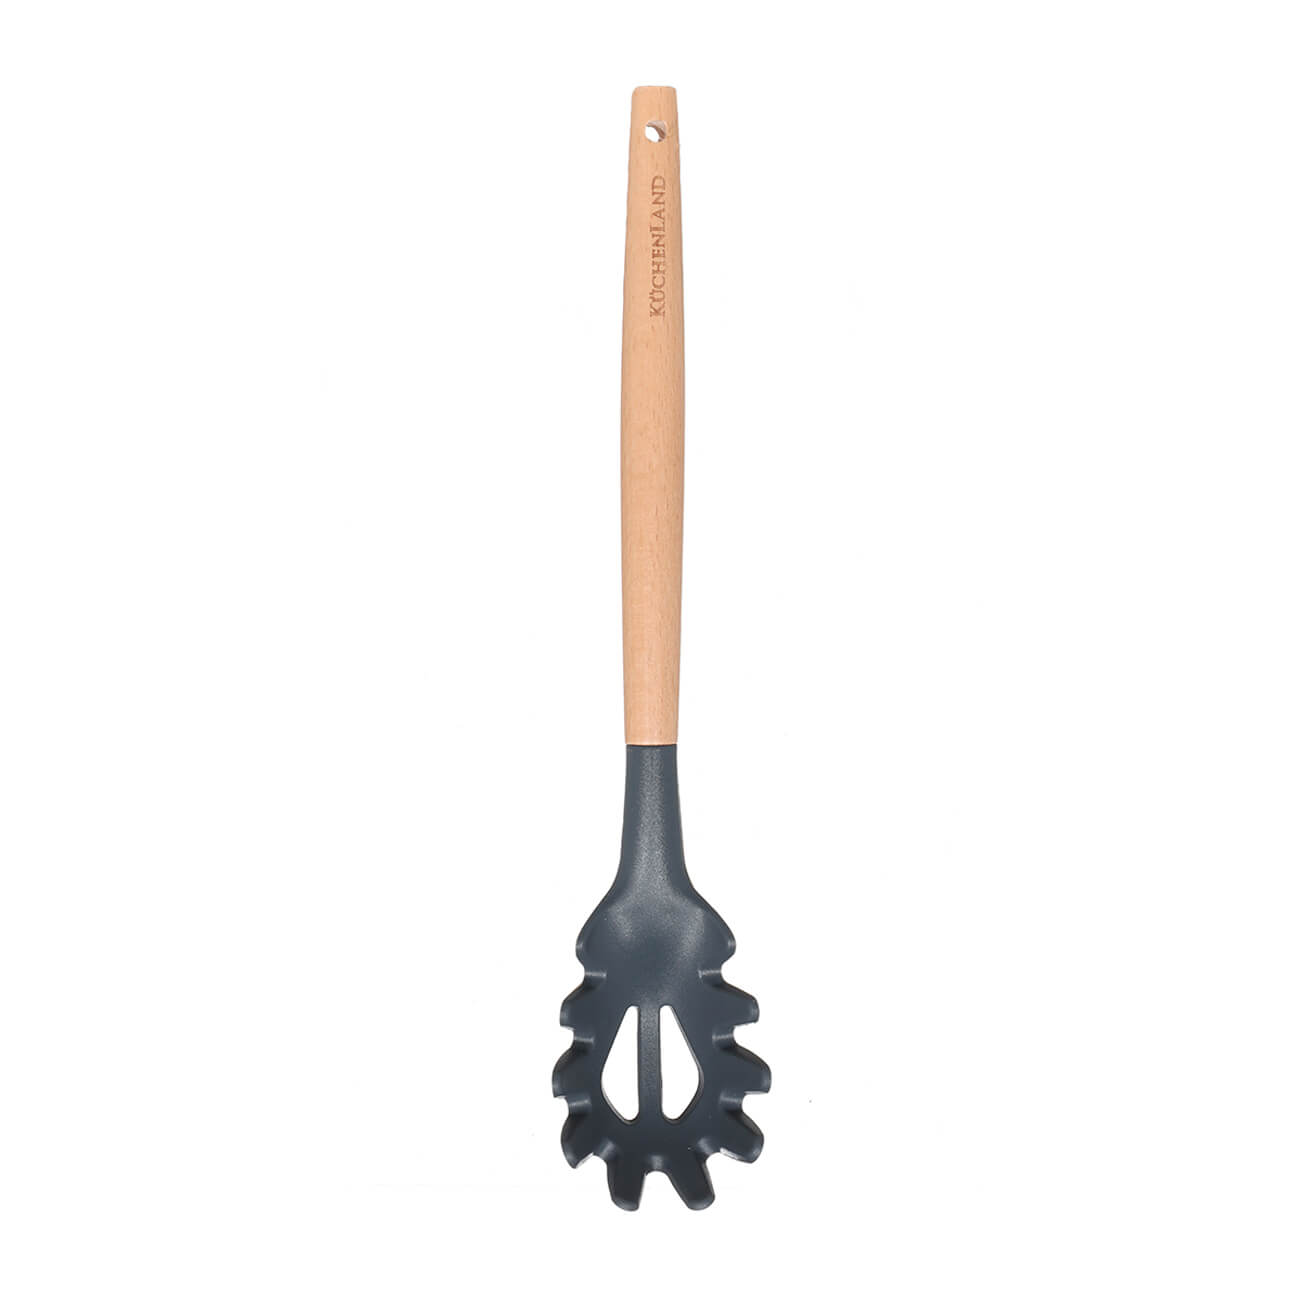 Spaghetti spoon, 31 cm, wood/silicone, Grey, Weekend изображение № 1